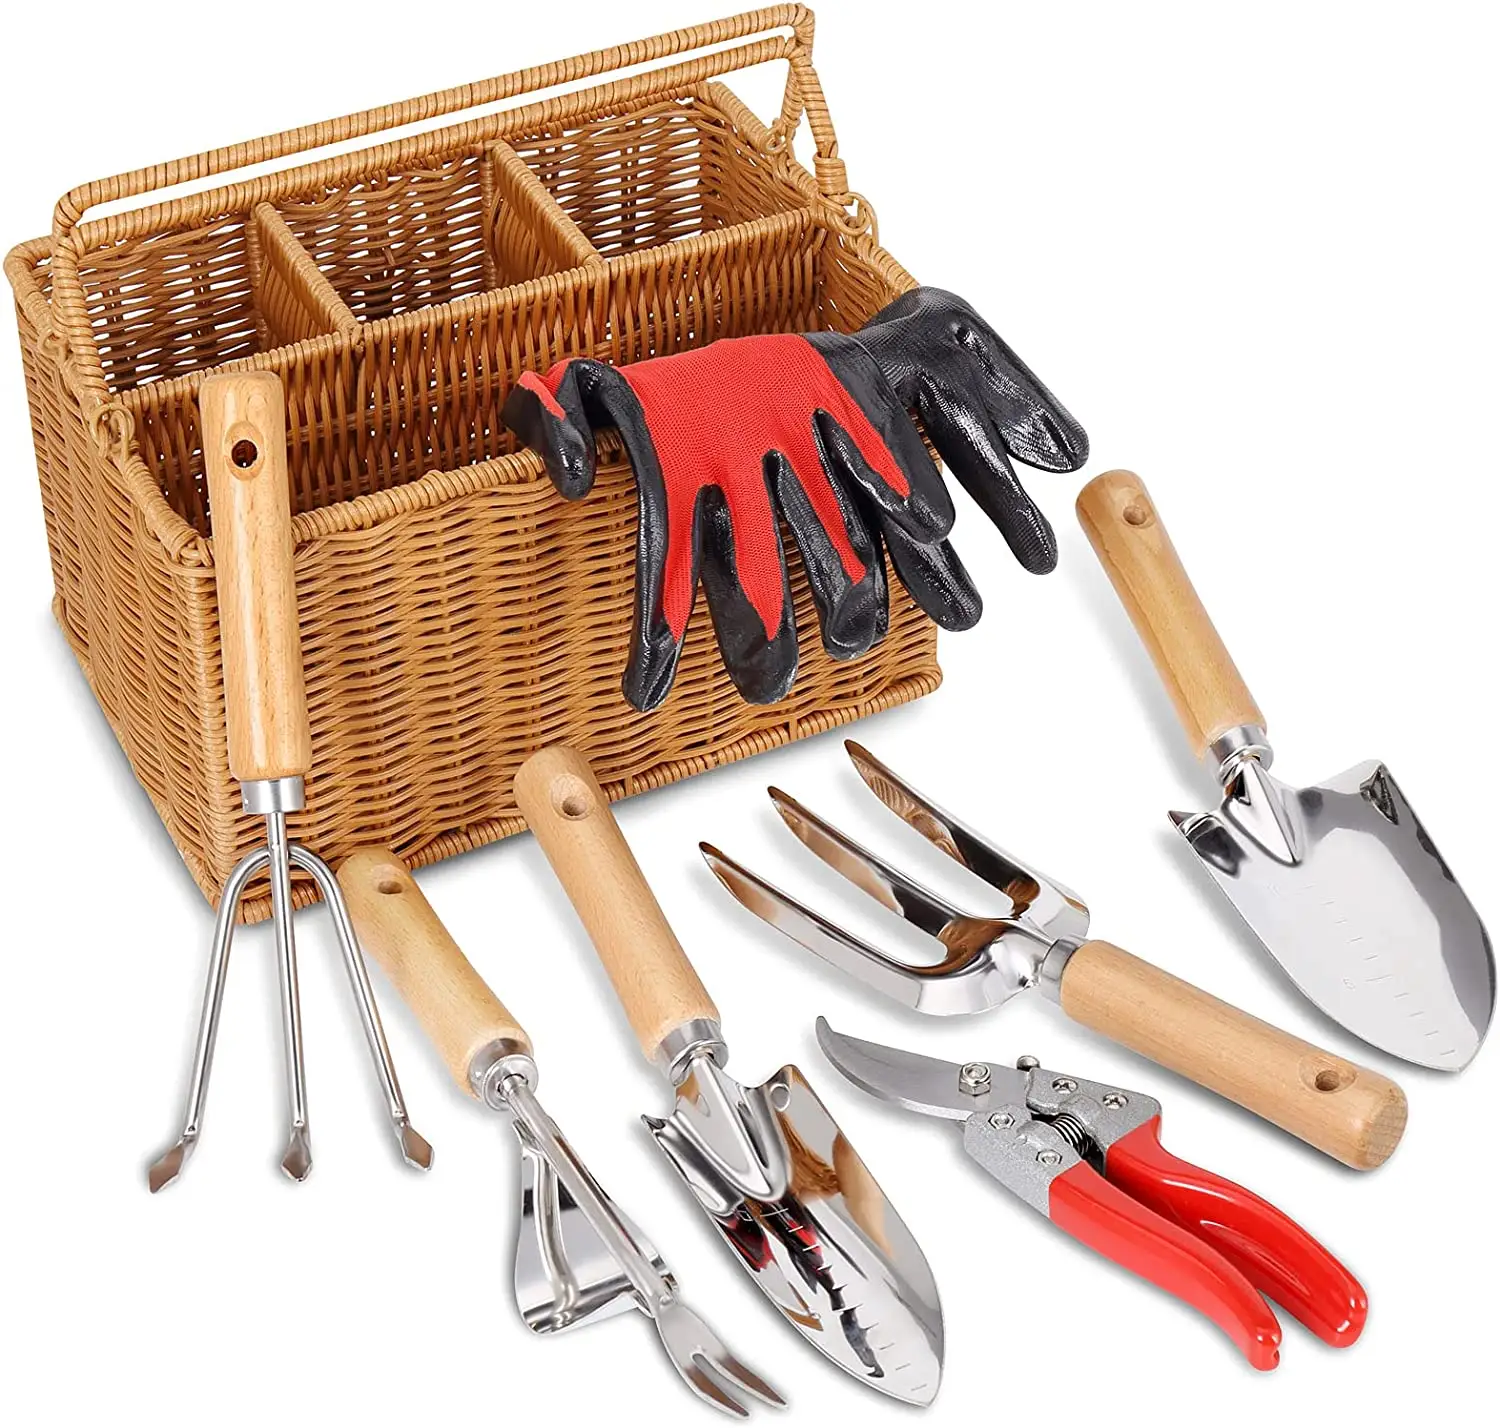 Cesta de mimbre para jardín, herramientas de mano de jardinería con organizador de almacenamiento, cesta con mango de madera para hombre y mujer